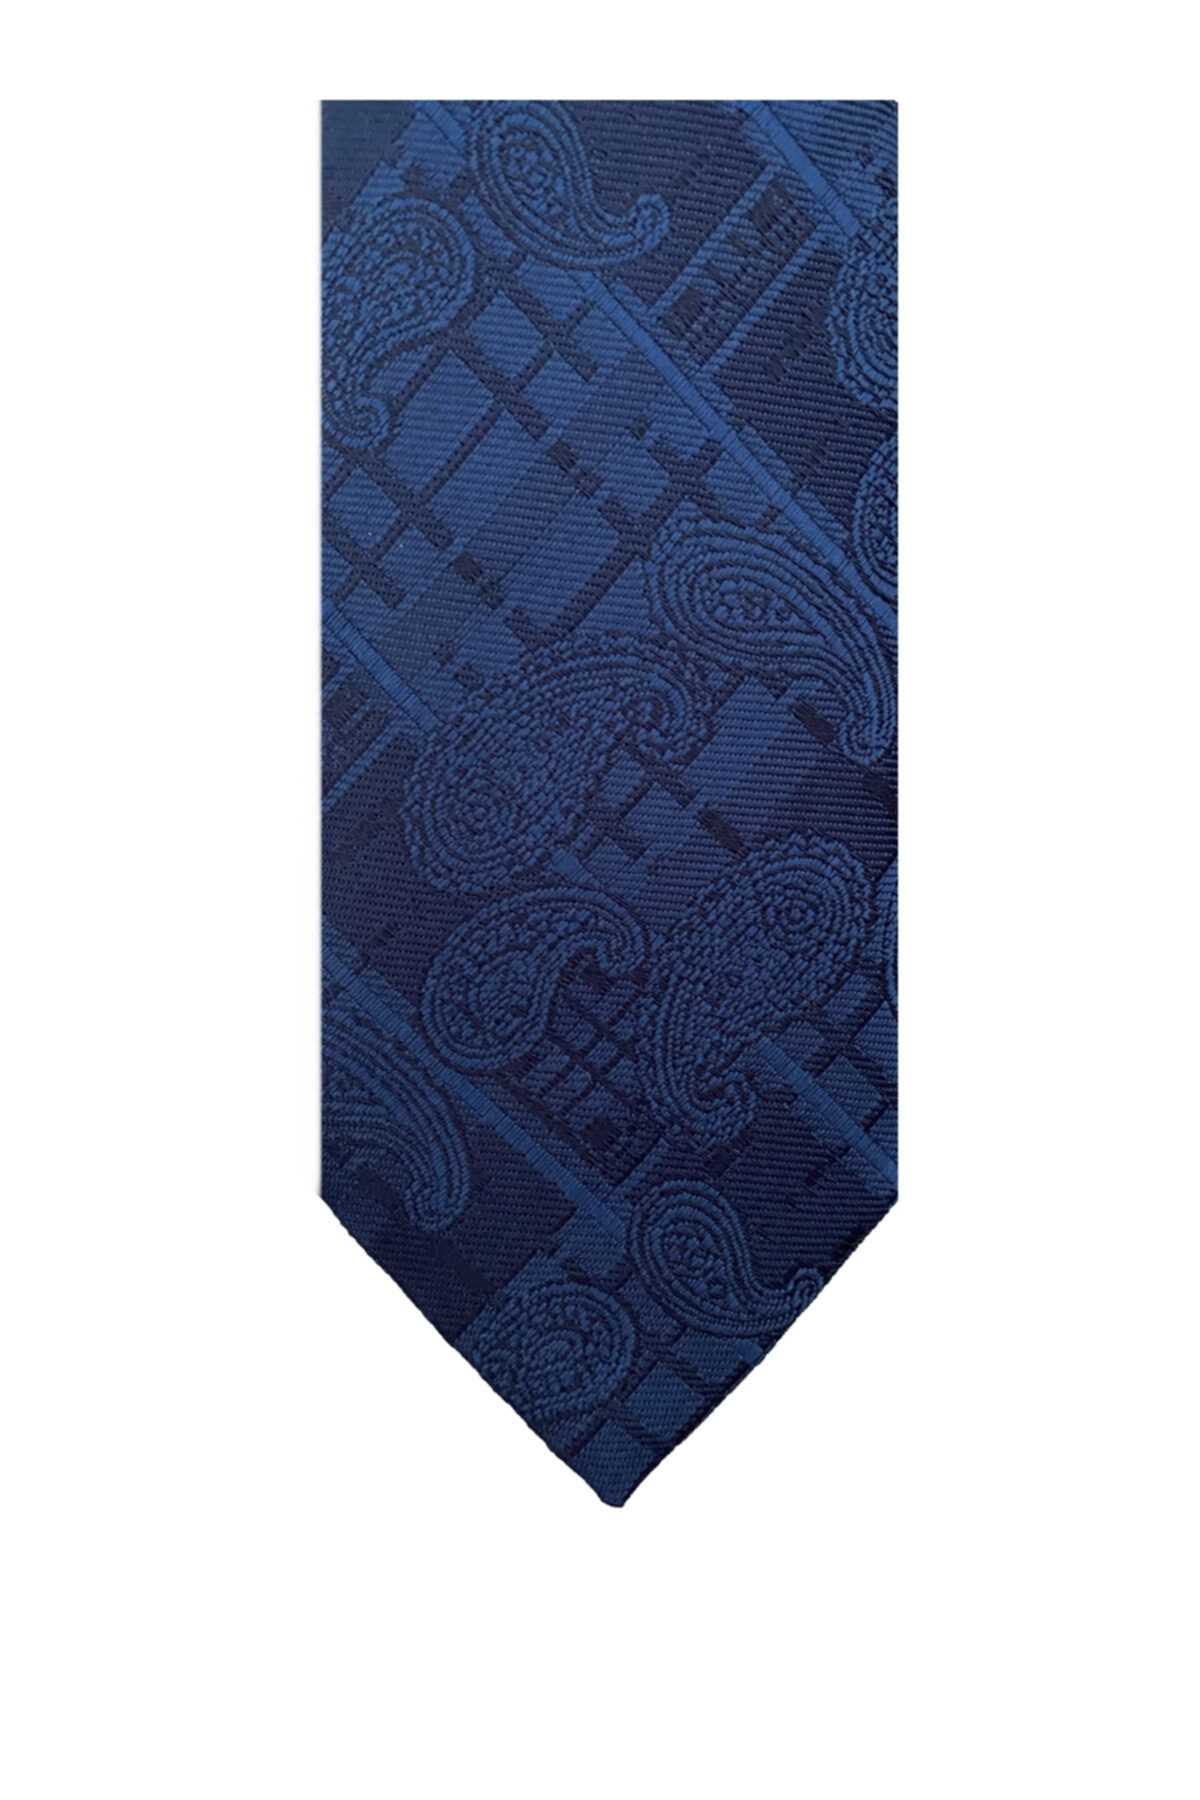 خرید نقدی کراوات ترک برند SÜVARİ رنگ لاجوردی کد ty95774835